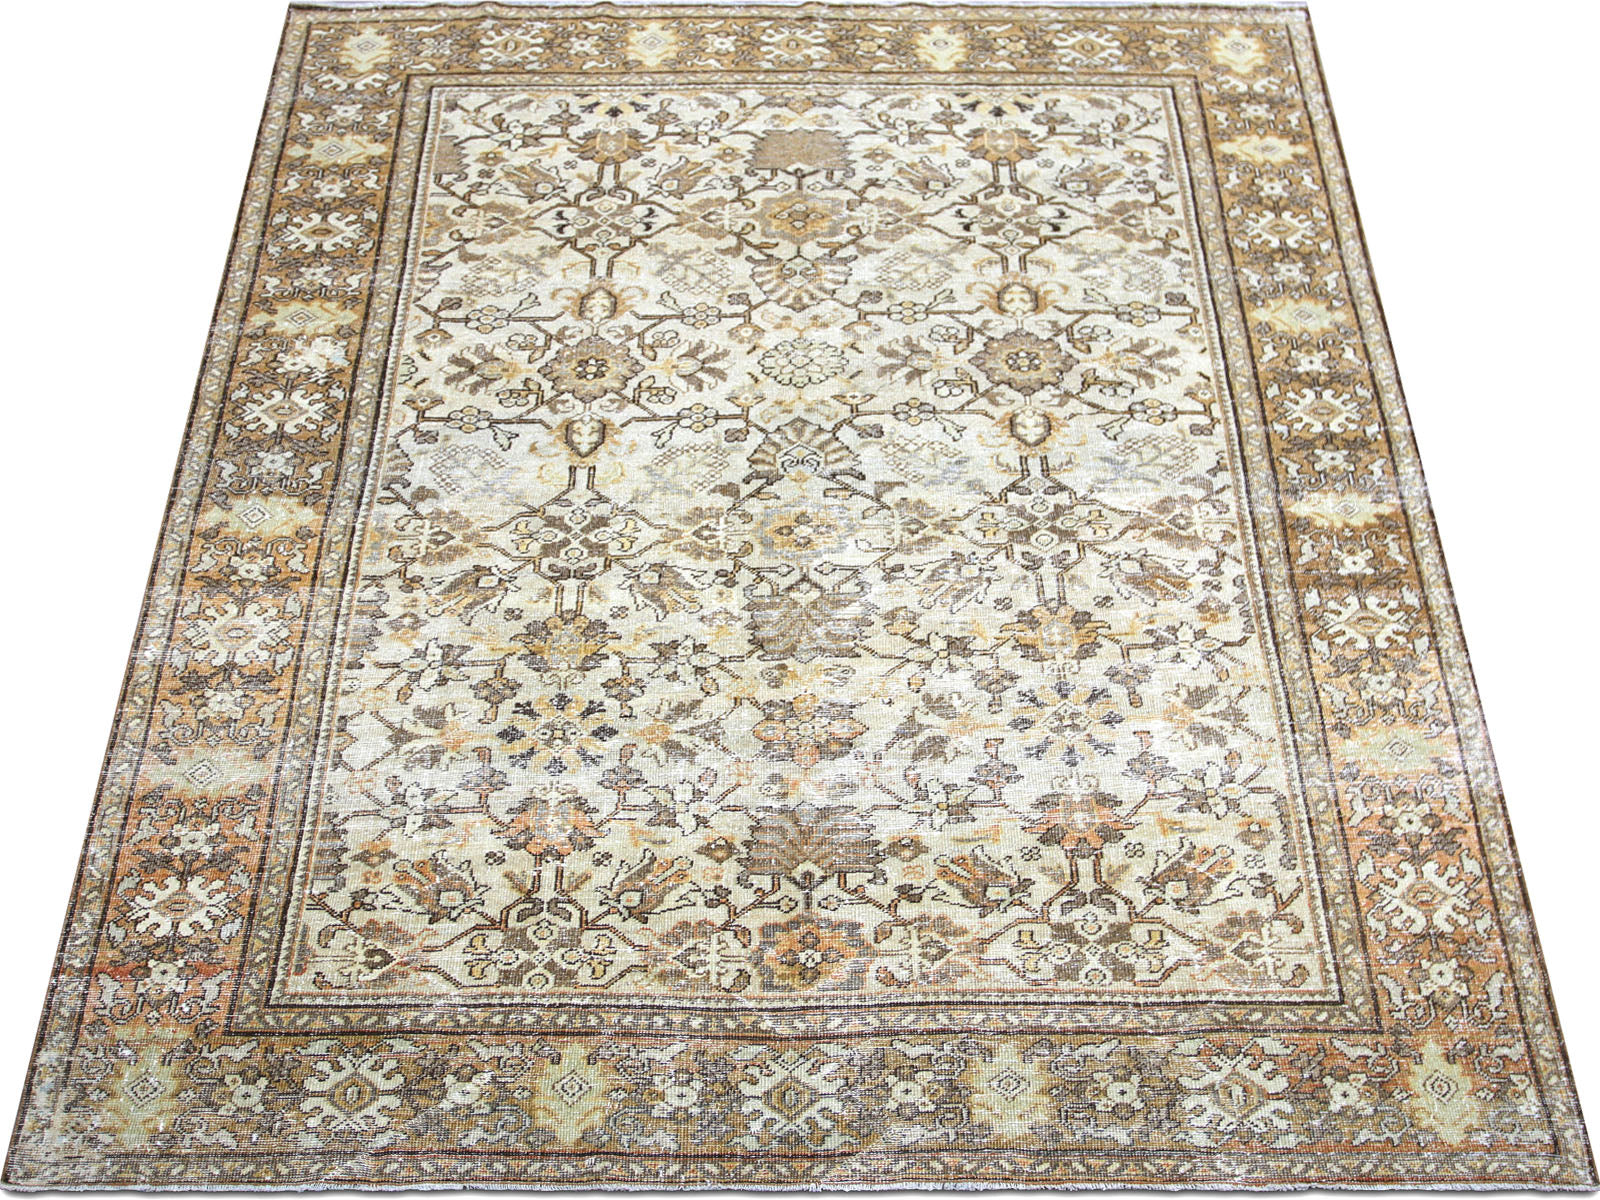 Antique Persian Mahal Rug - 7'6" x 10'